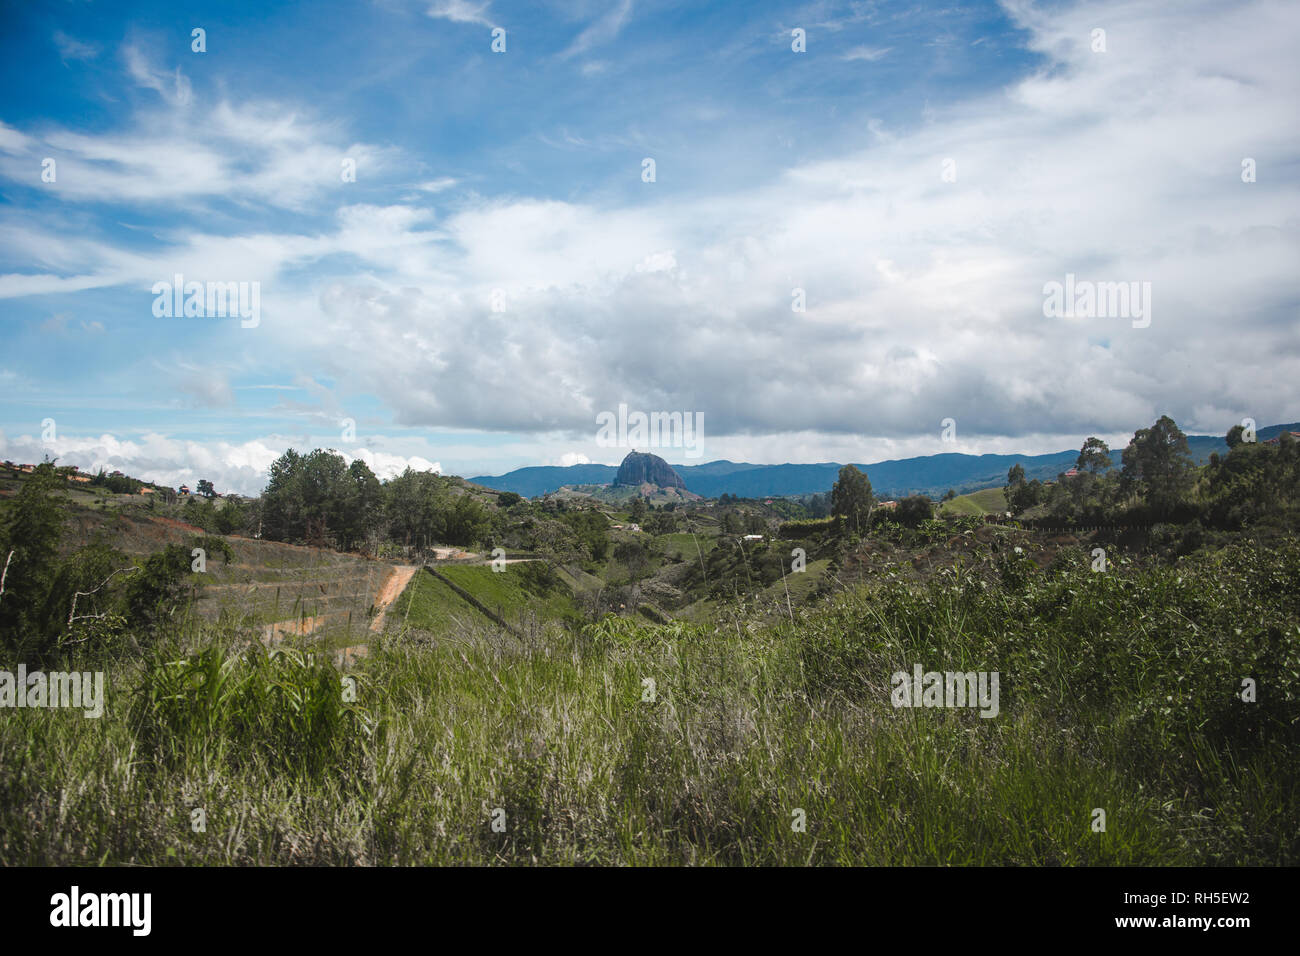 Colombiano di Antioquia campagna con la Guatapé Piedra del Peñol rock visibile dietro il verde delle colline Foto Stock